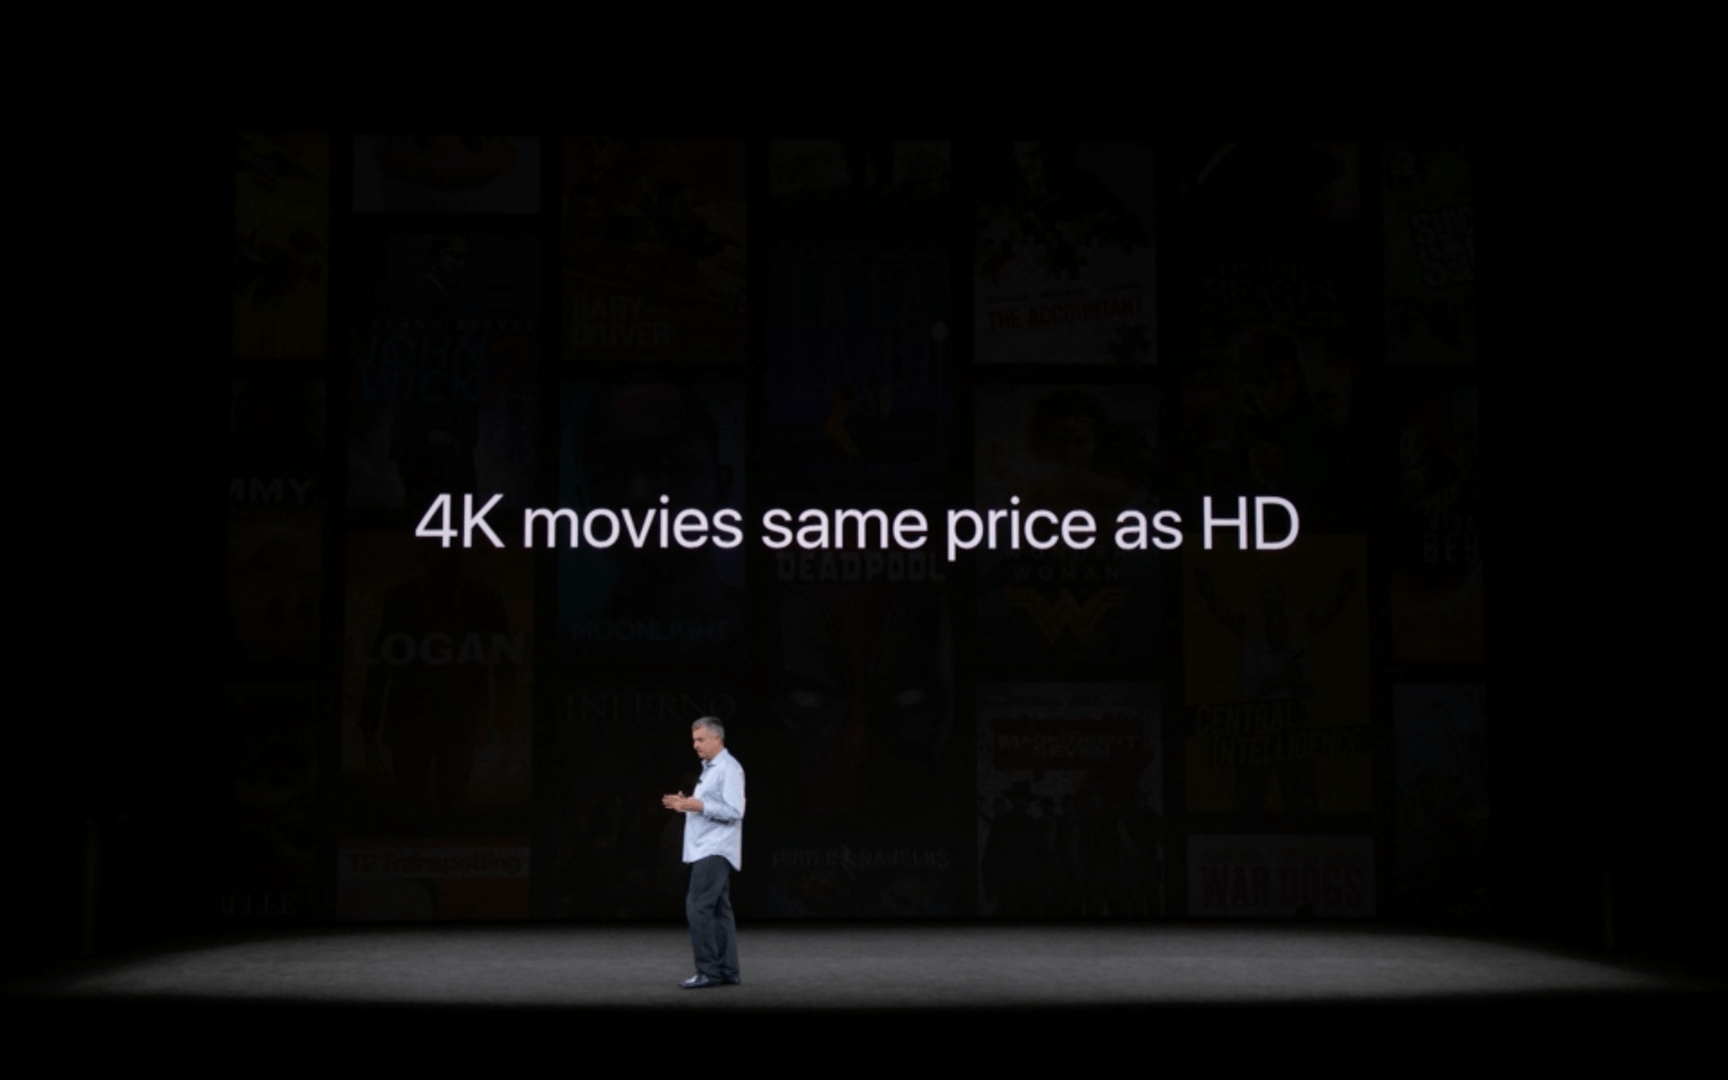 Apple TV 4K